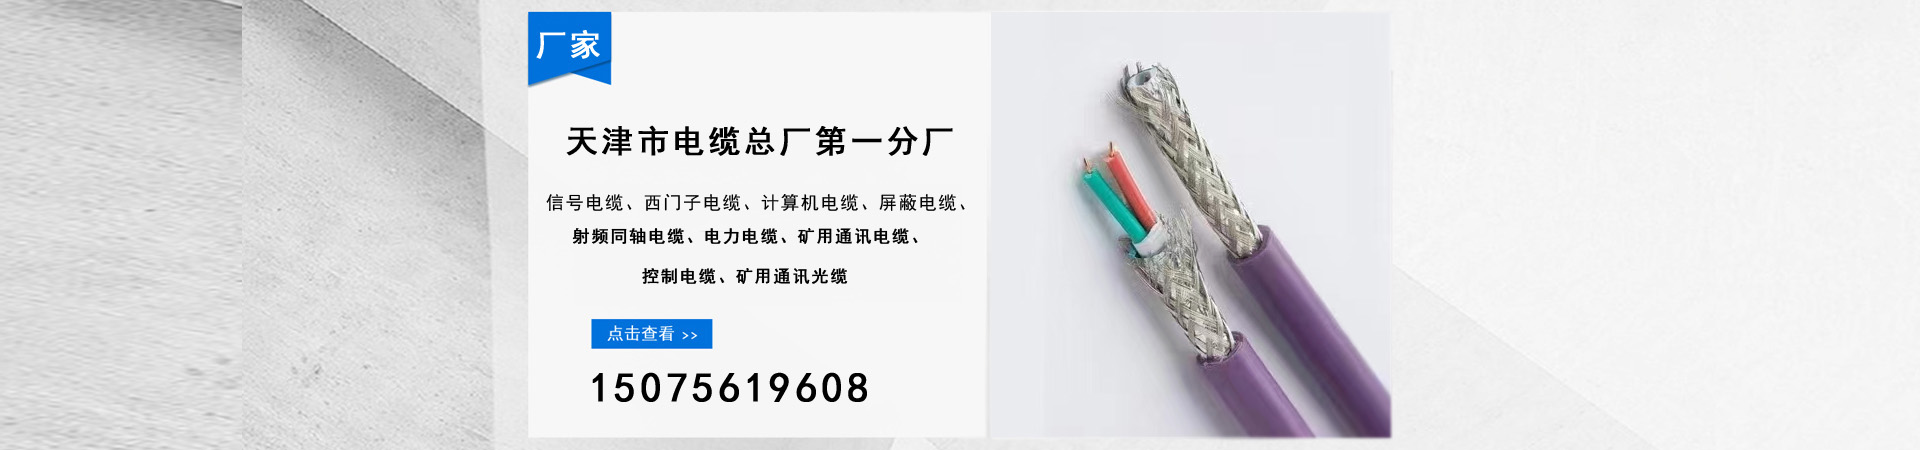 信号电缆、扬州本地信号电缆、扬州、扬州信号电缆